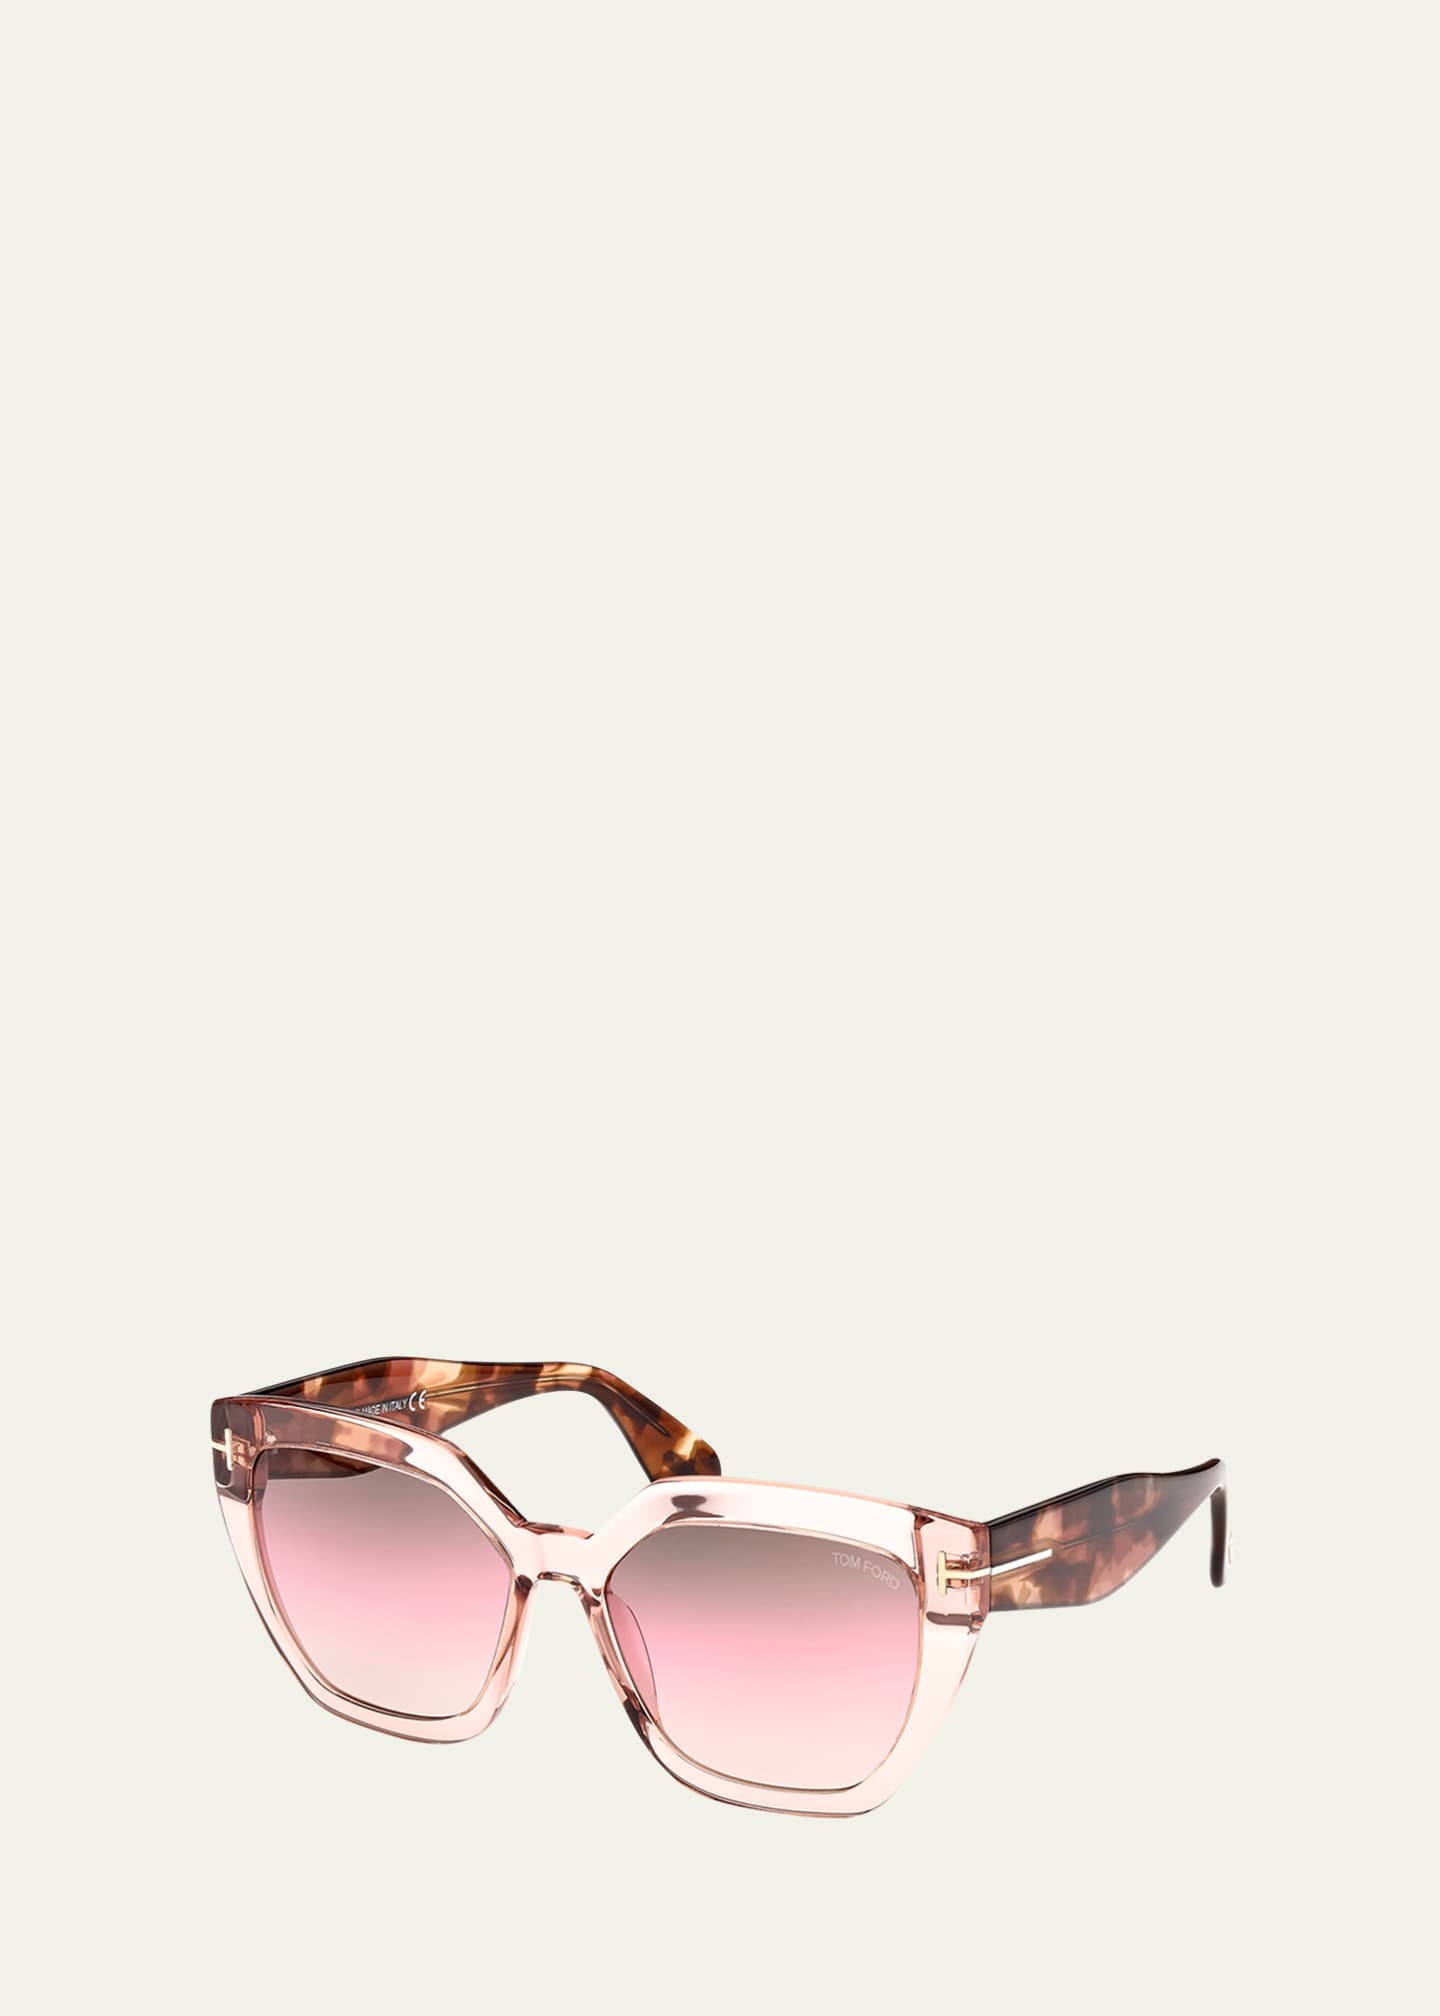 Politistation lettelse Rettelse TOM FORD Phoebe Square Plastic Sunglasses - Bergdorf Goodman